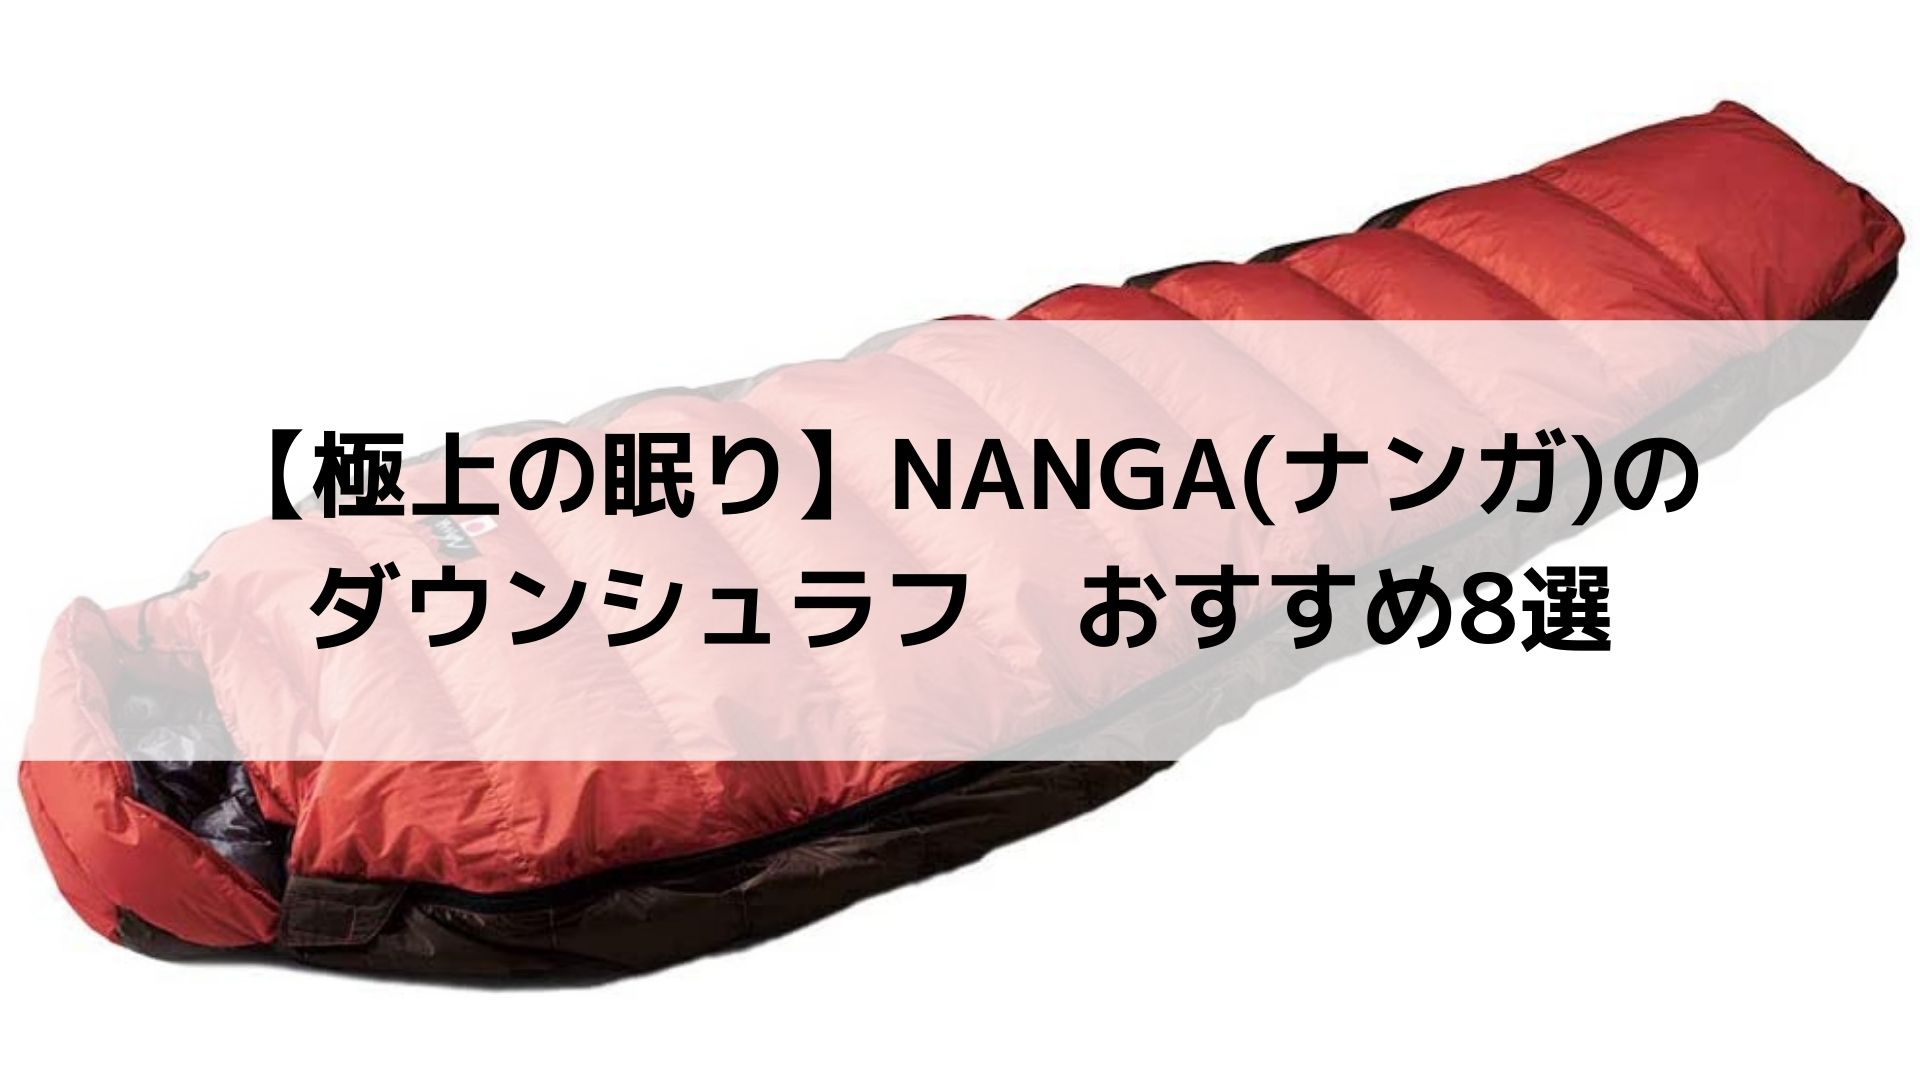 NANGA(ナンガ)のダウンシュラフおすすめ8選【キャンプから登山まで